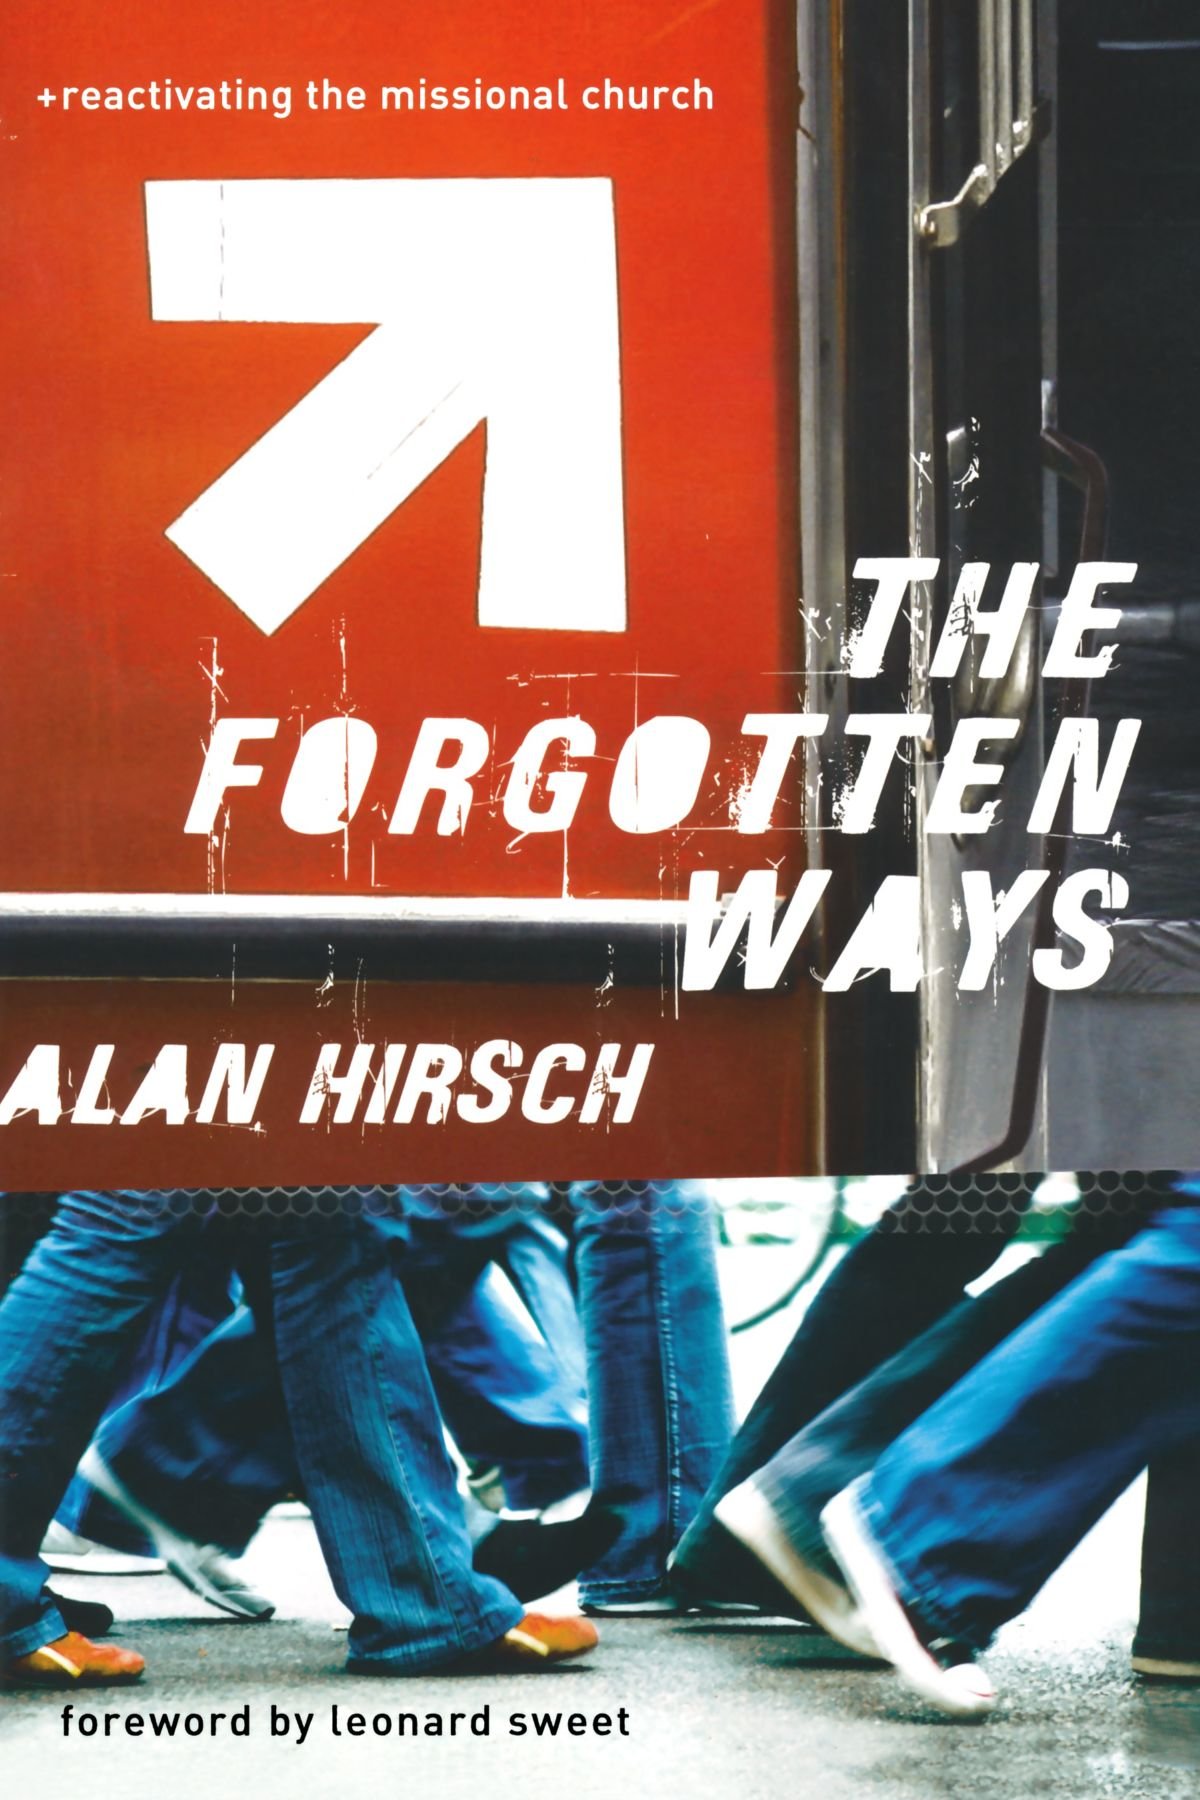 The Forgotten Ways